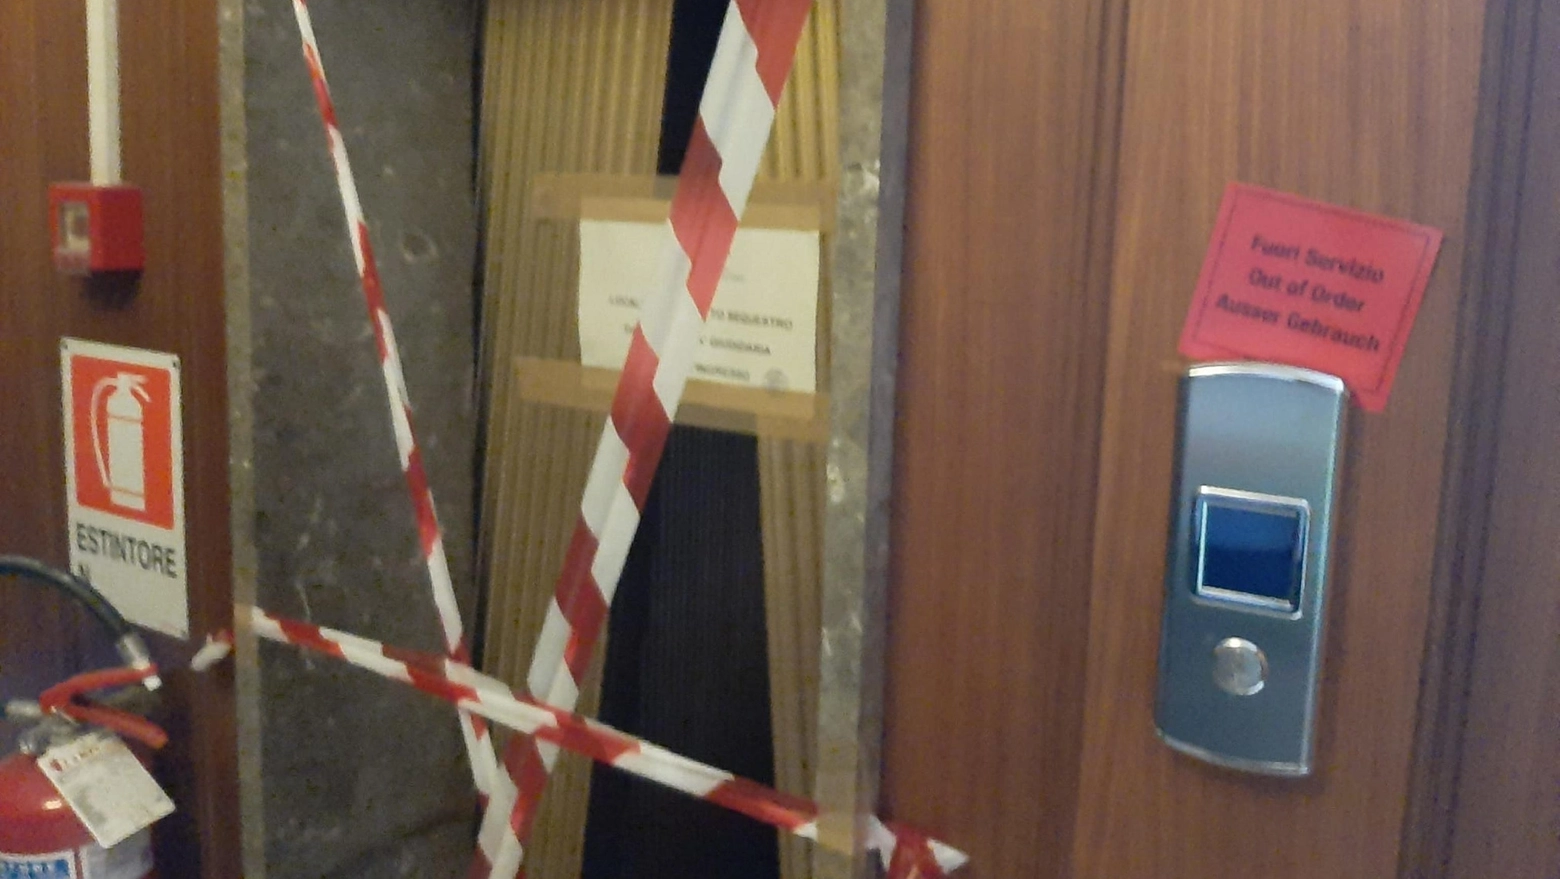 La porta dell'ascensore dove è avvenuto l'omicidio a Mestre